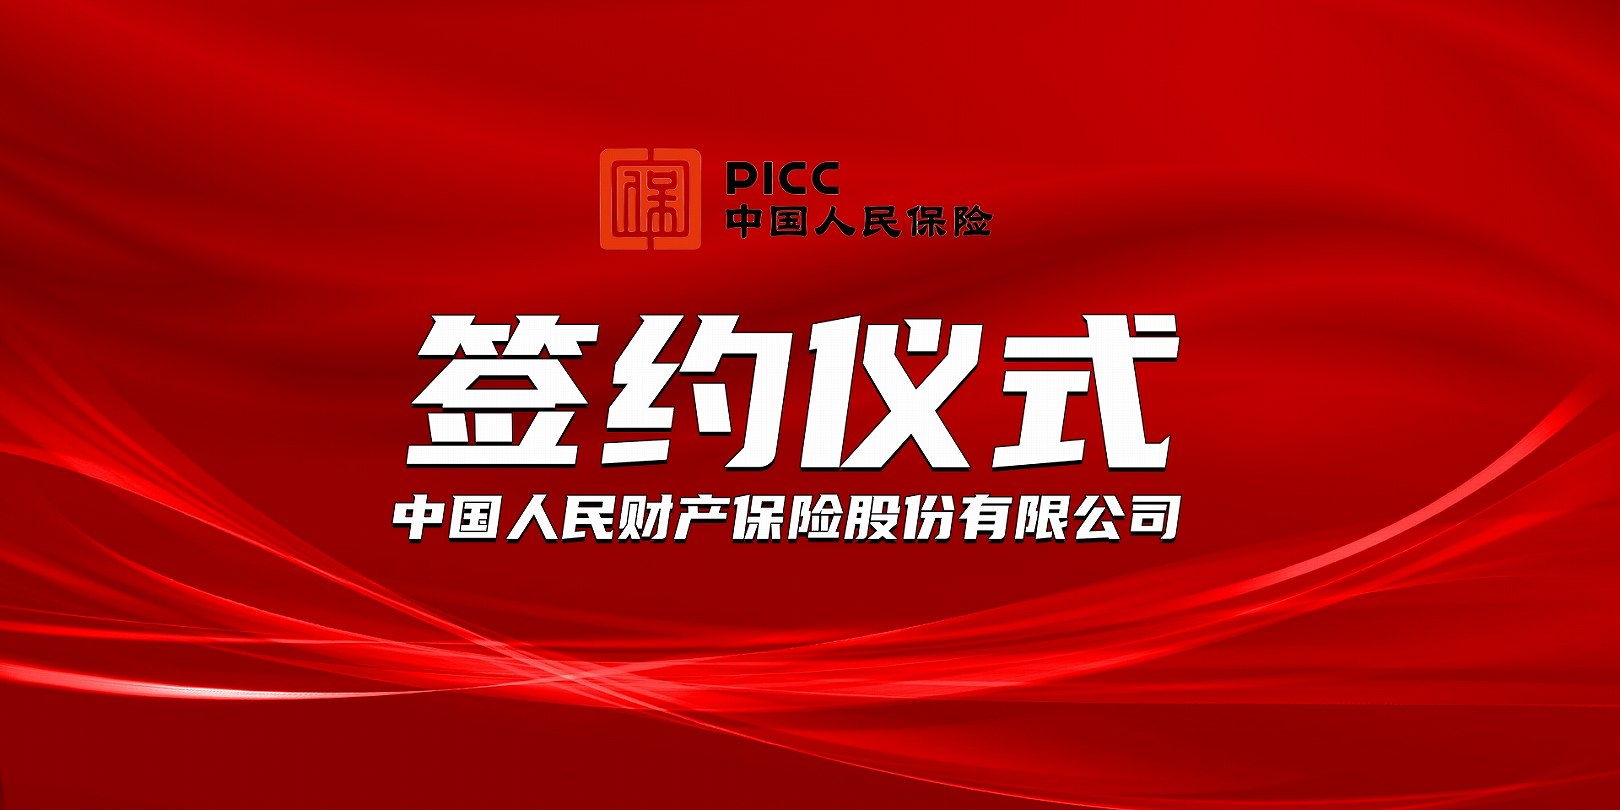 上海恩地企业管理集团有限公司签约PICC保险承保